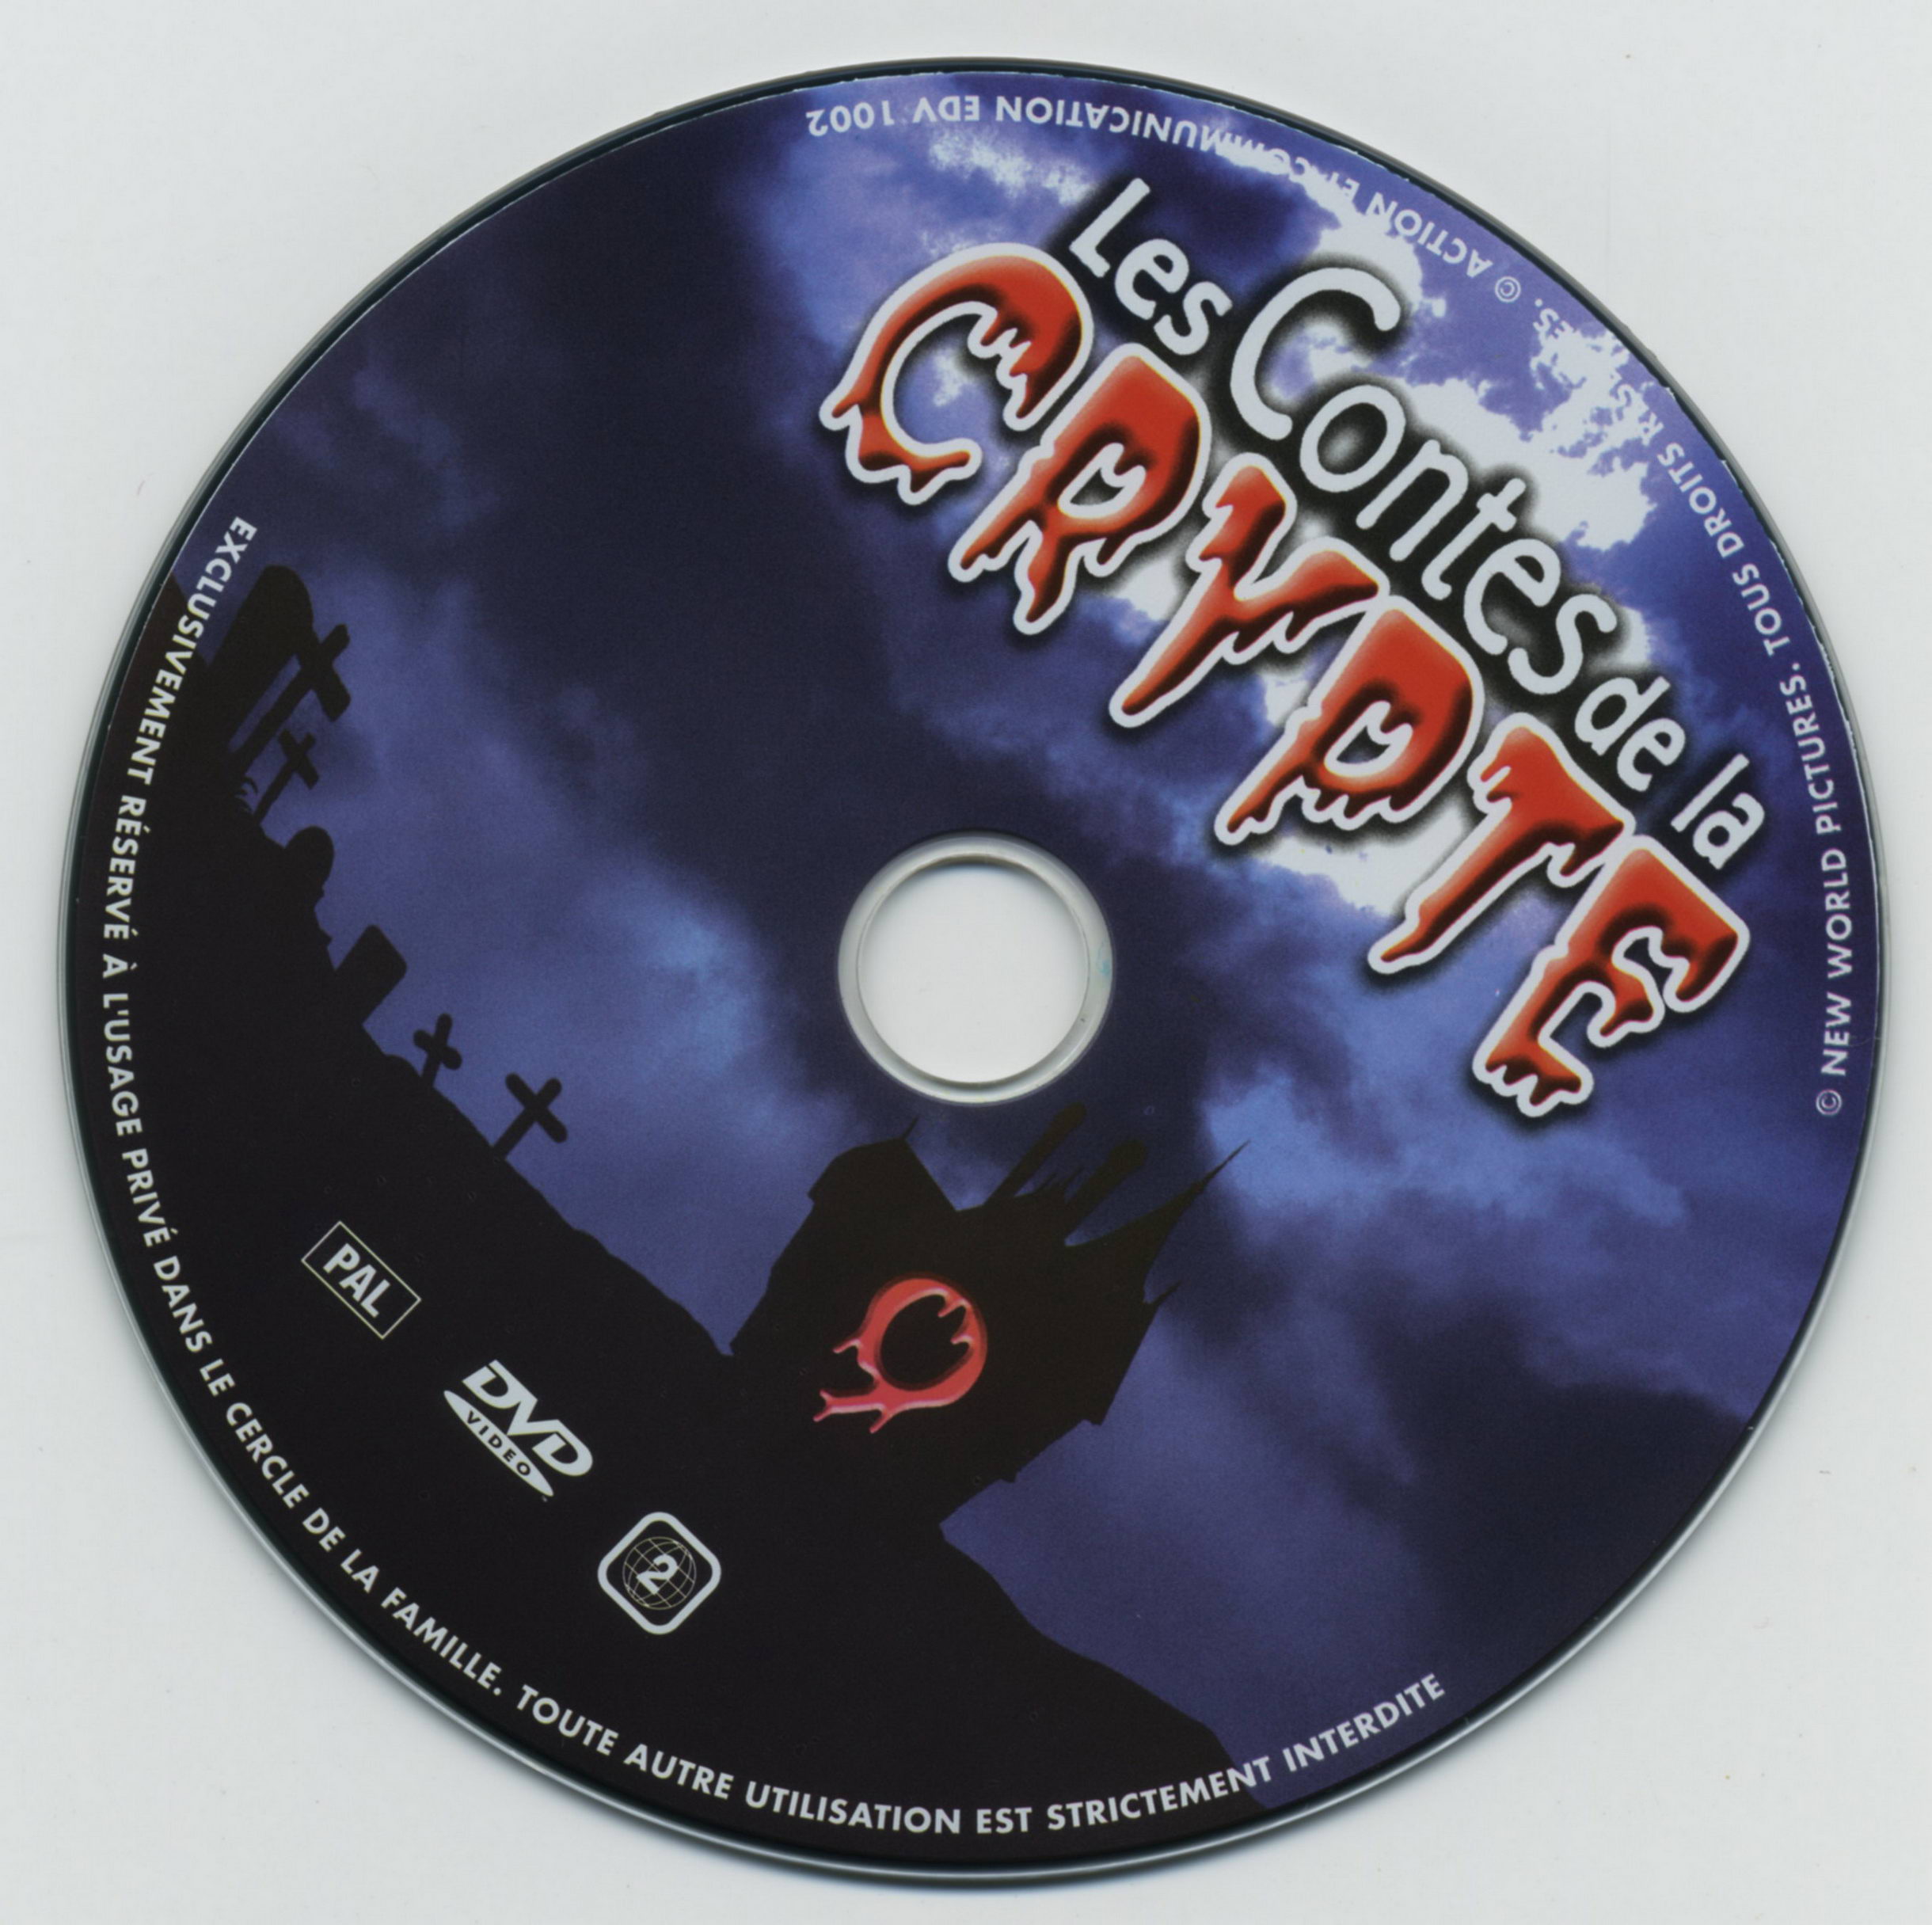 Les contes de la crypte vol 09 v2